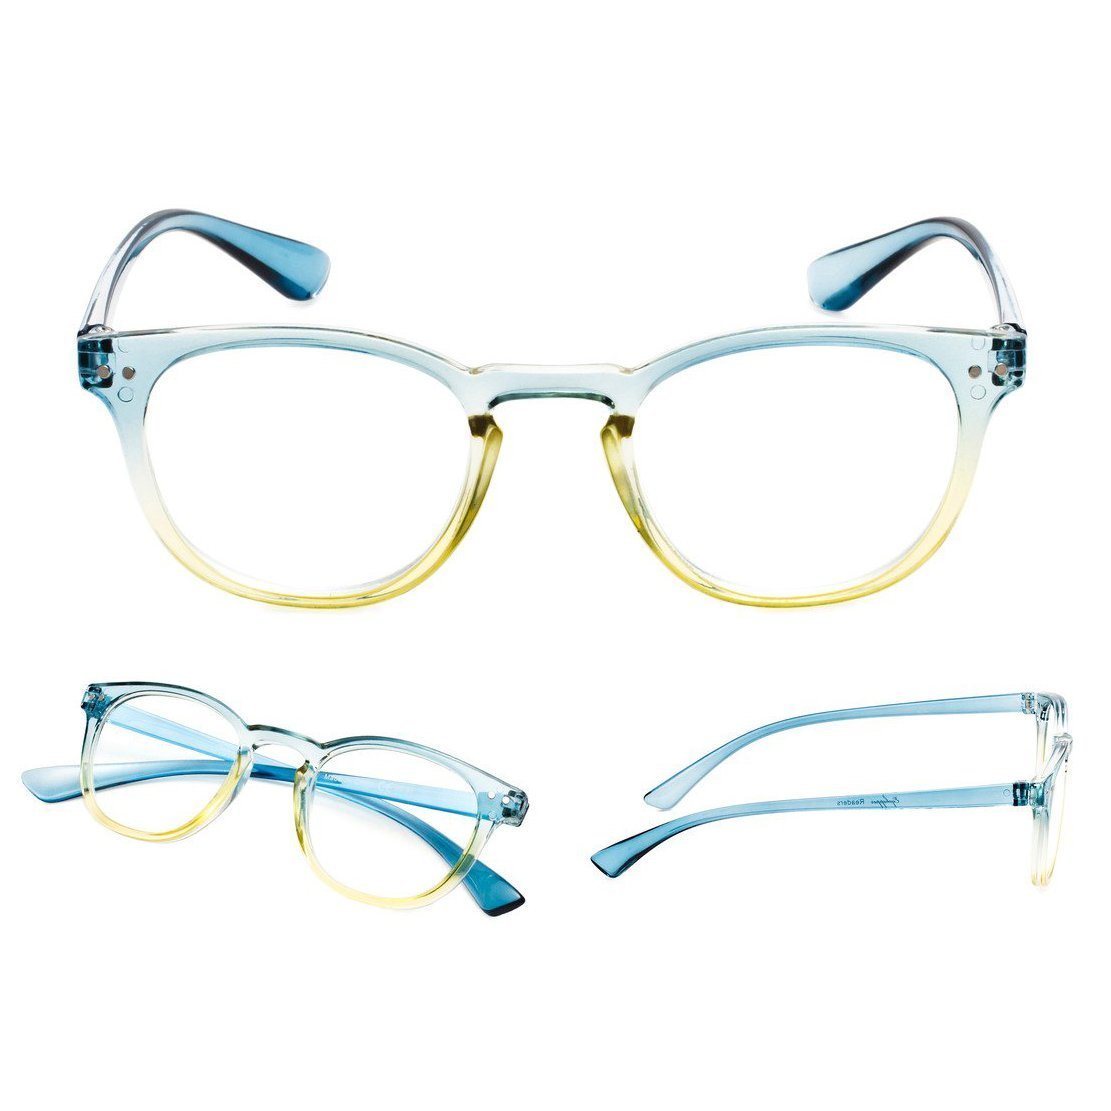 Fashion Reading Glasses Blue 3-R144